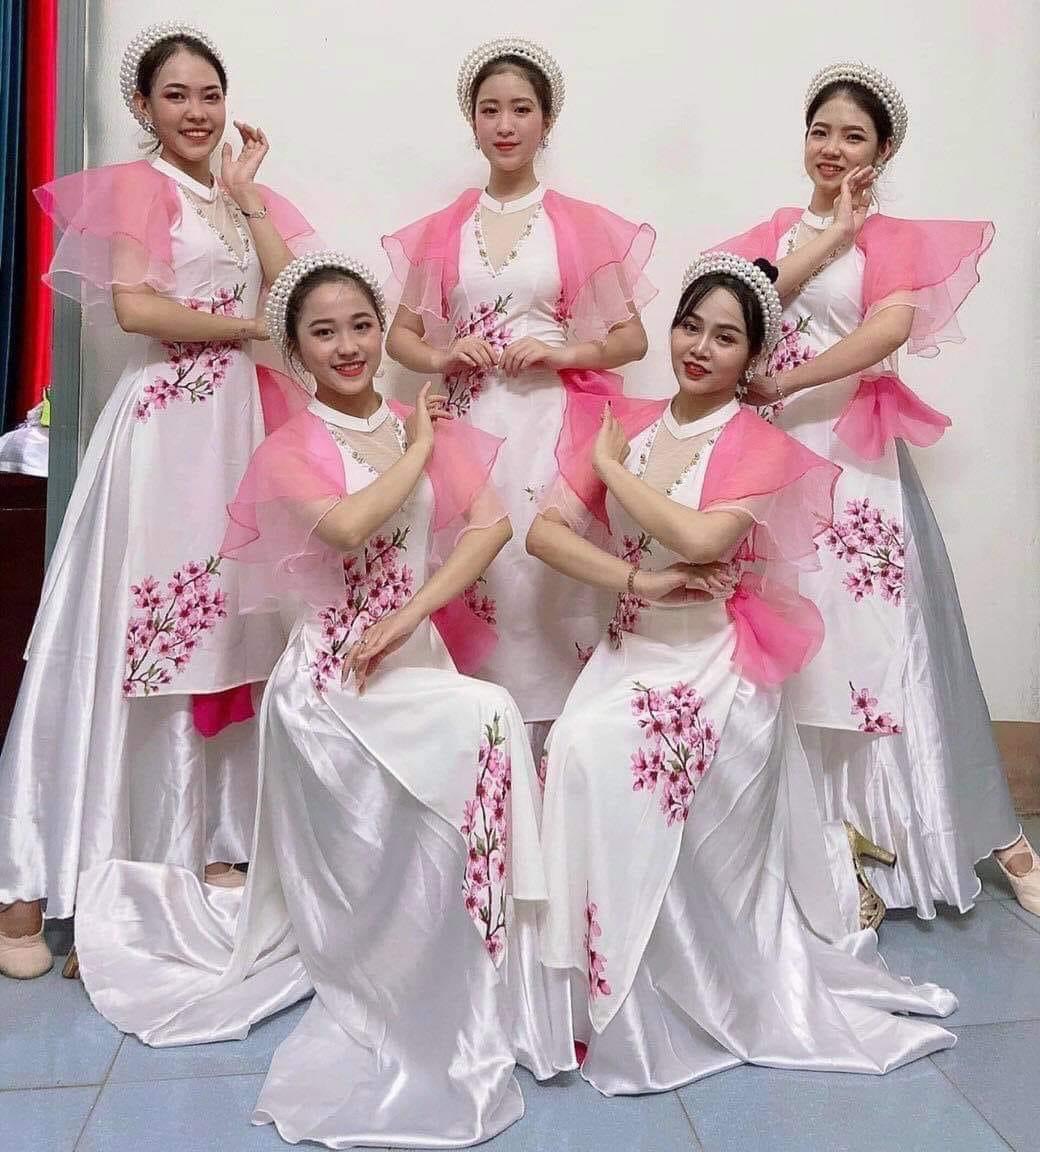 Váy múa đương đại  May Trang Phục Biểu Diễn Phúc Khang  Facebook